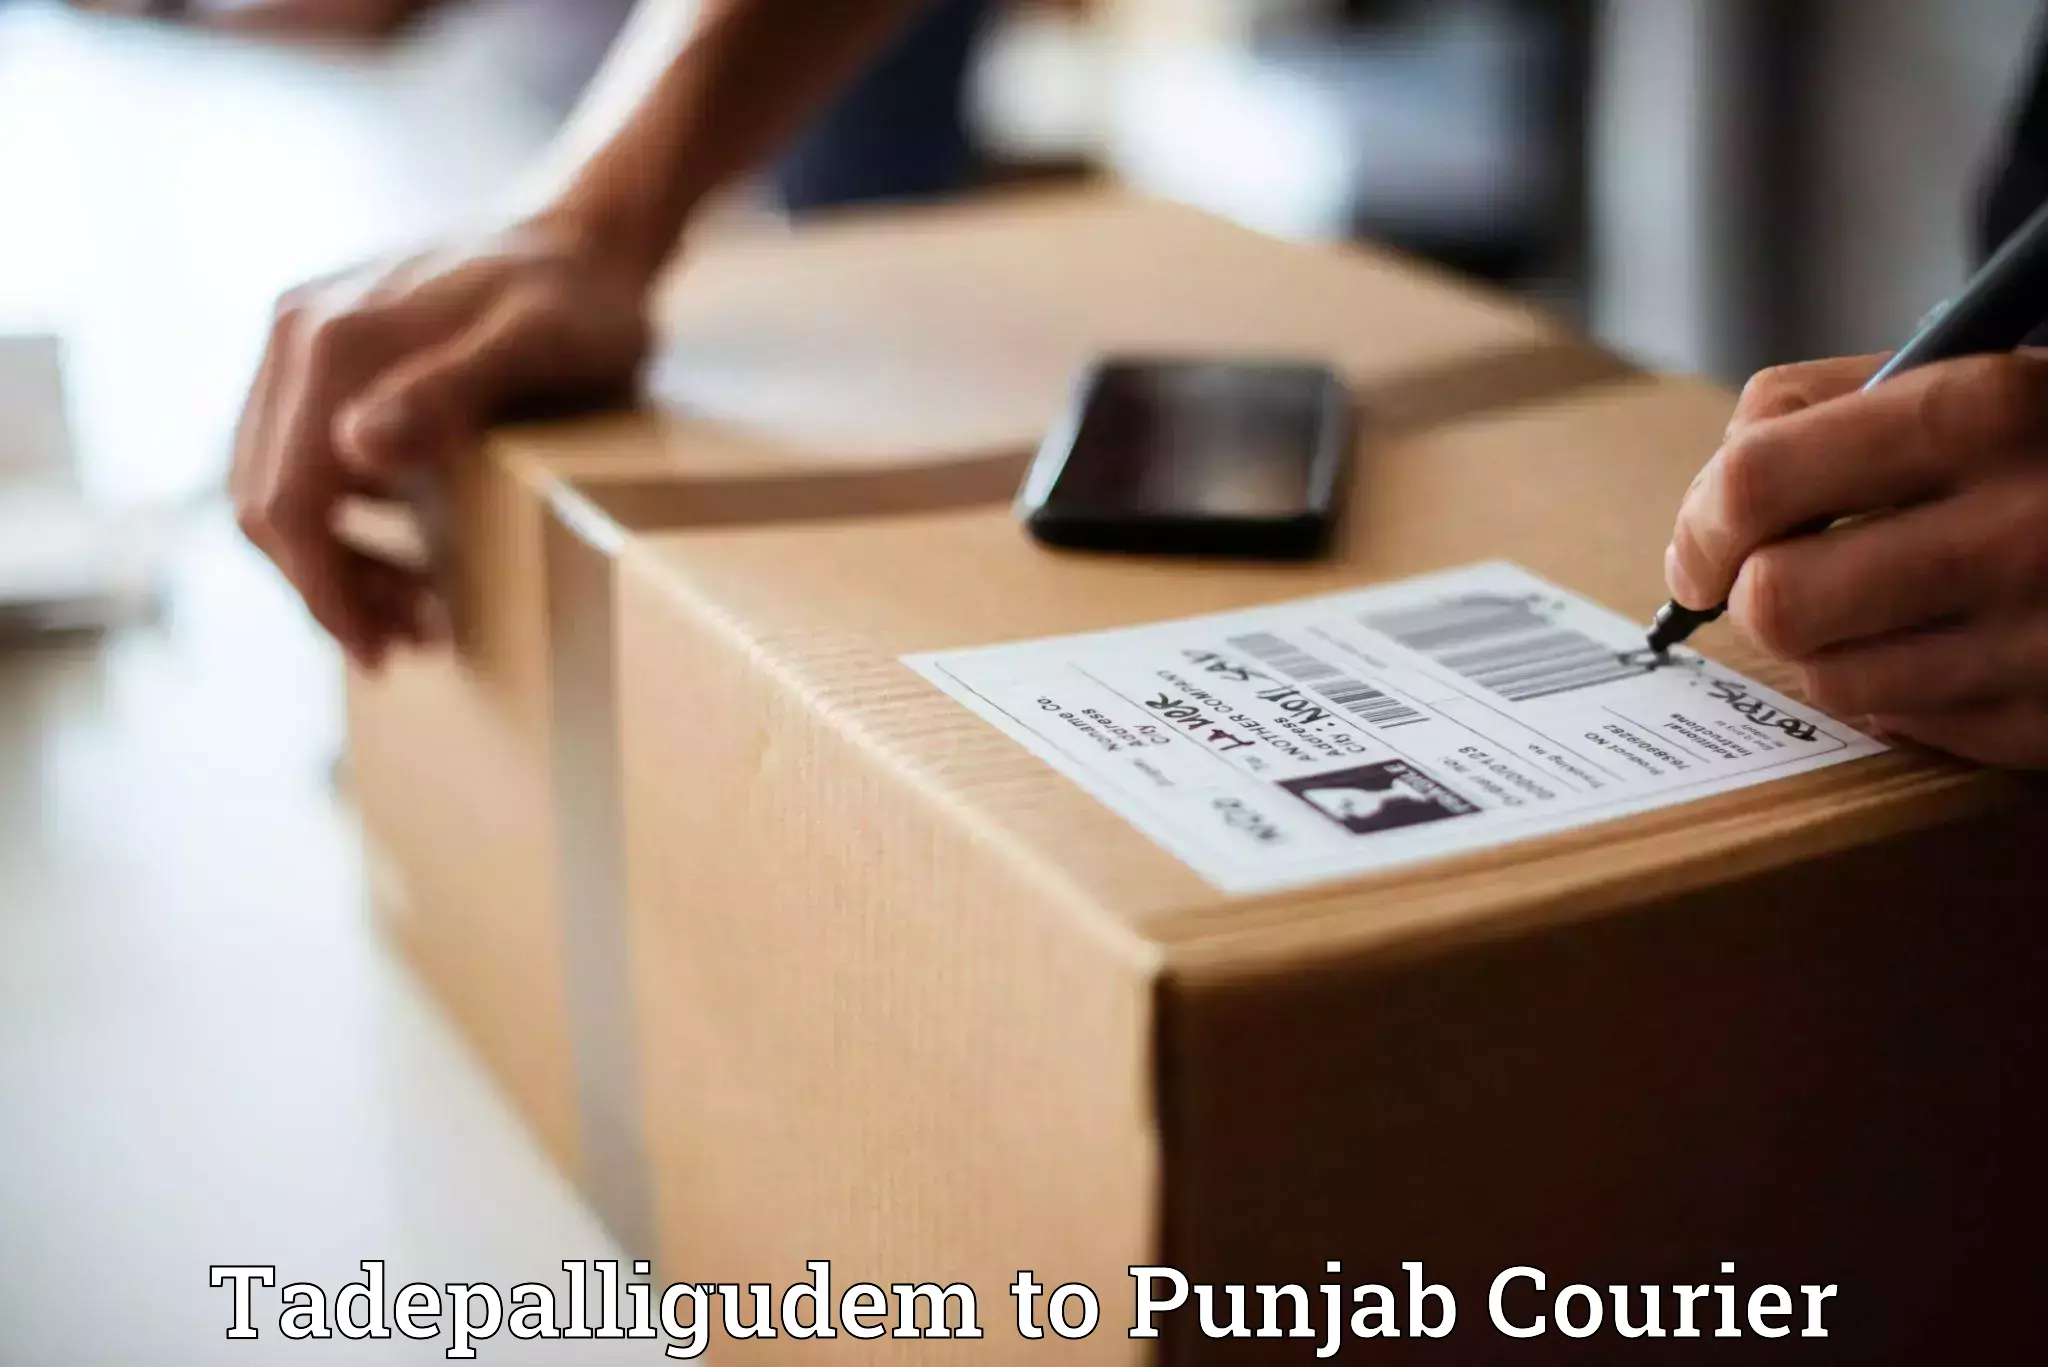 Business delivery service Tadepalligudem to Sirhind Fatehgarh